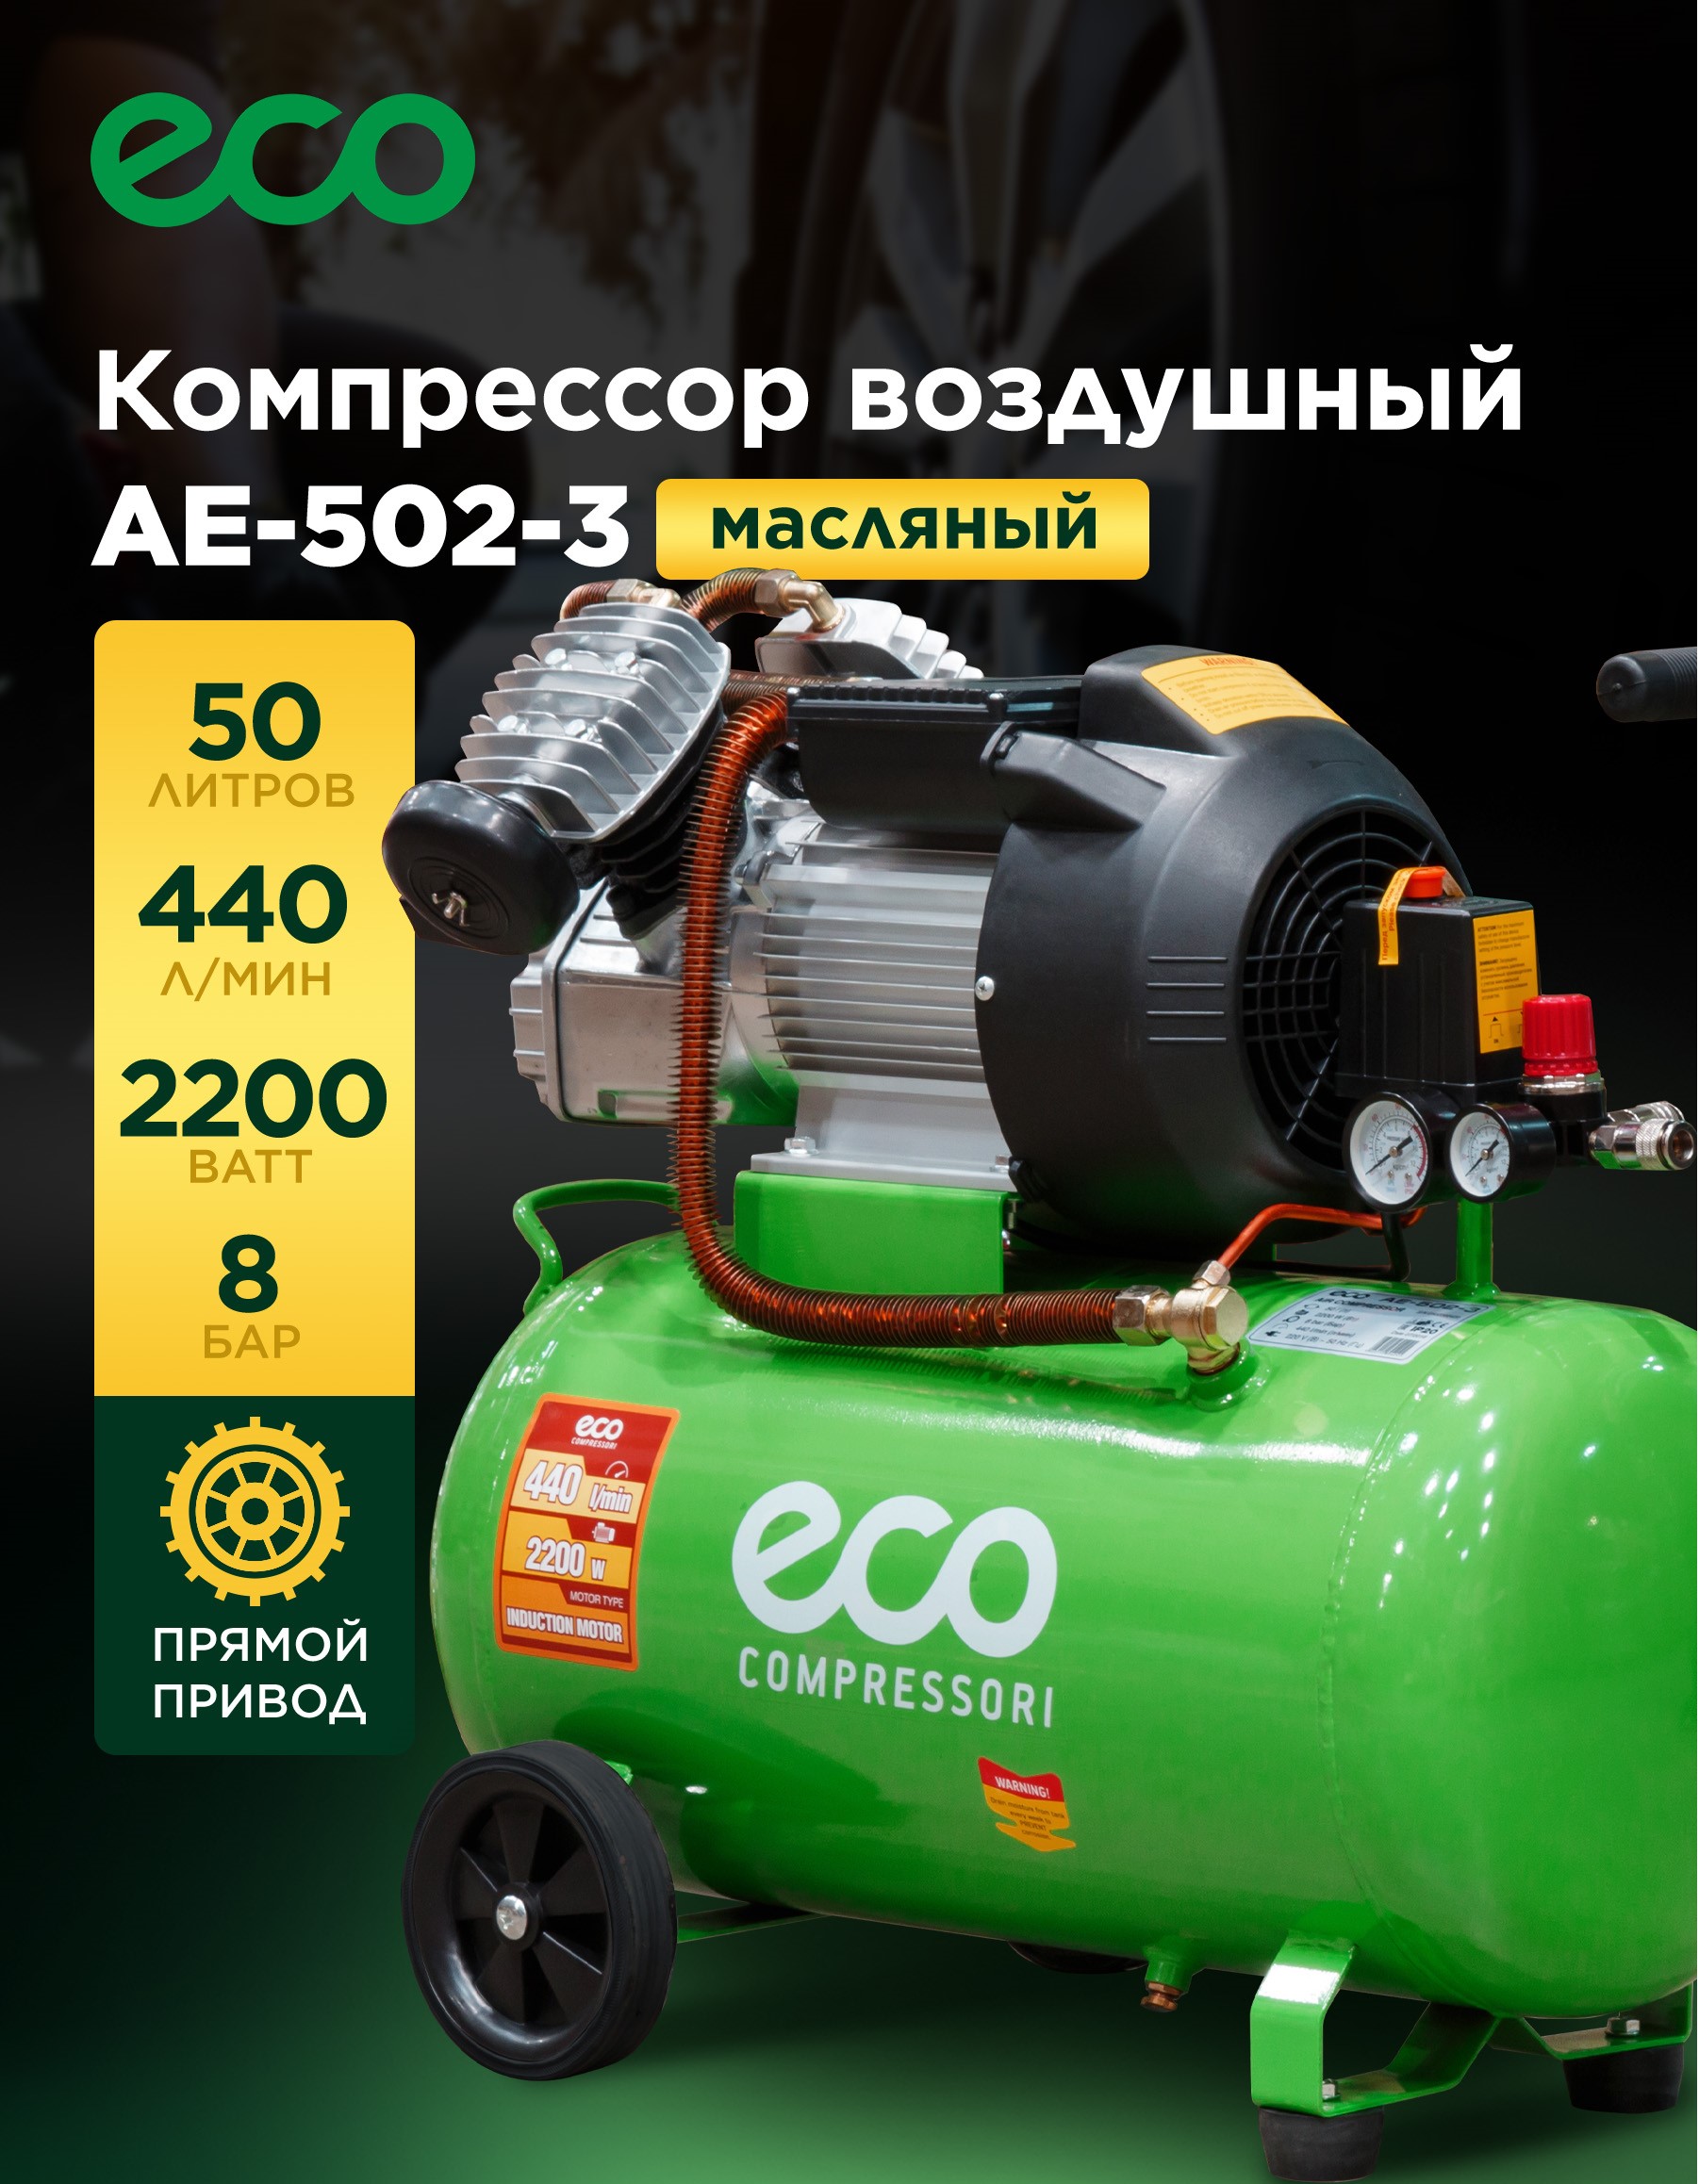 Компрессор воздушный масляный ECO AE-502-3